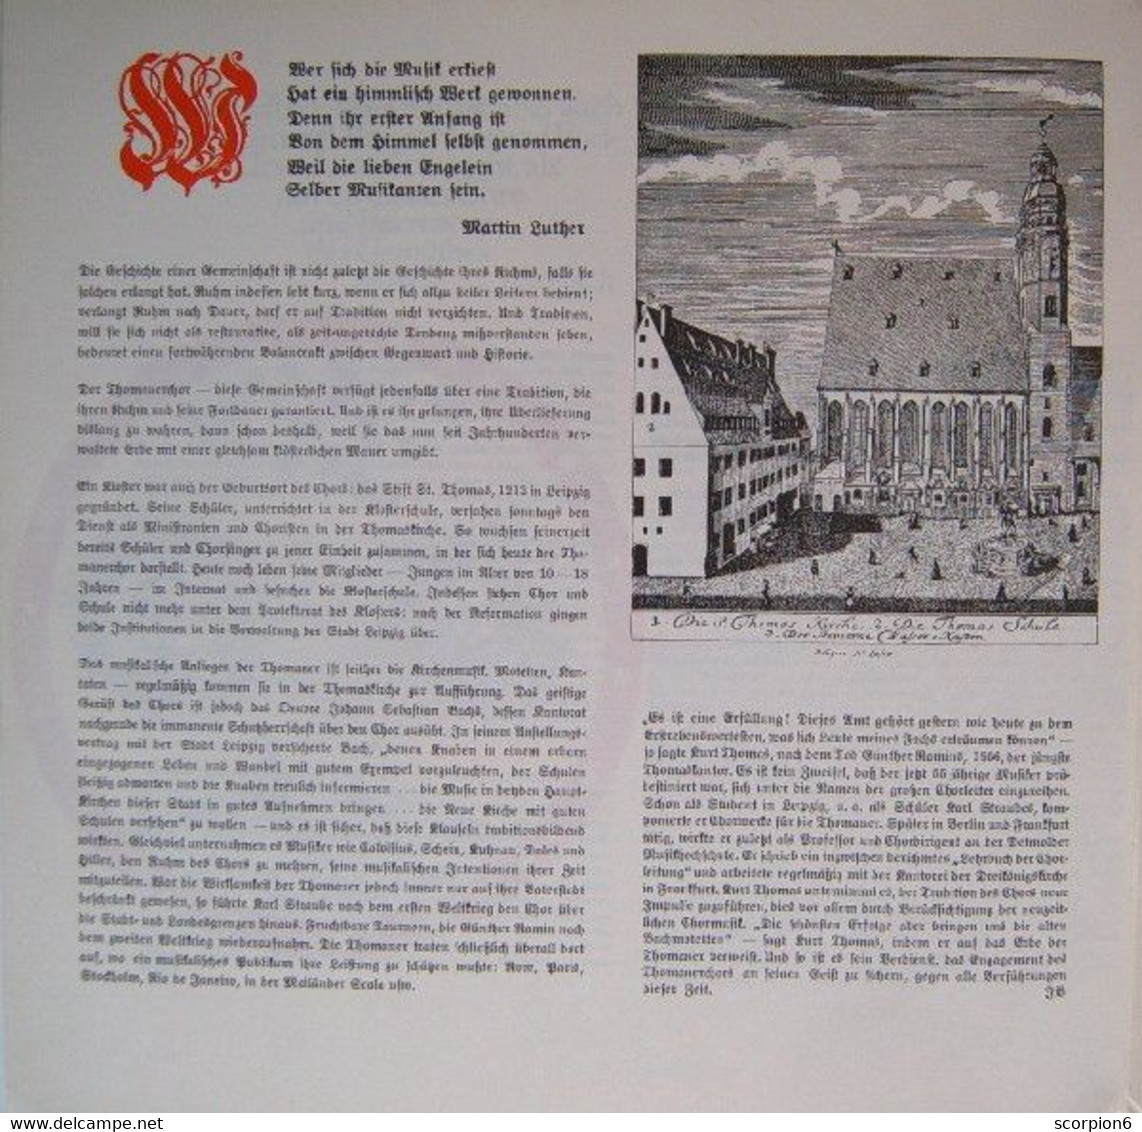 3 x 12" LP - Bach - Weihnachtsoratorium